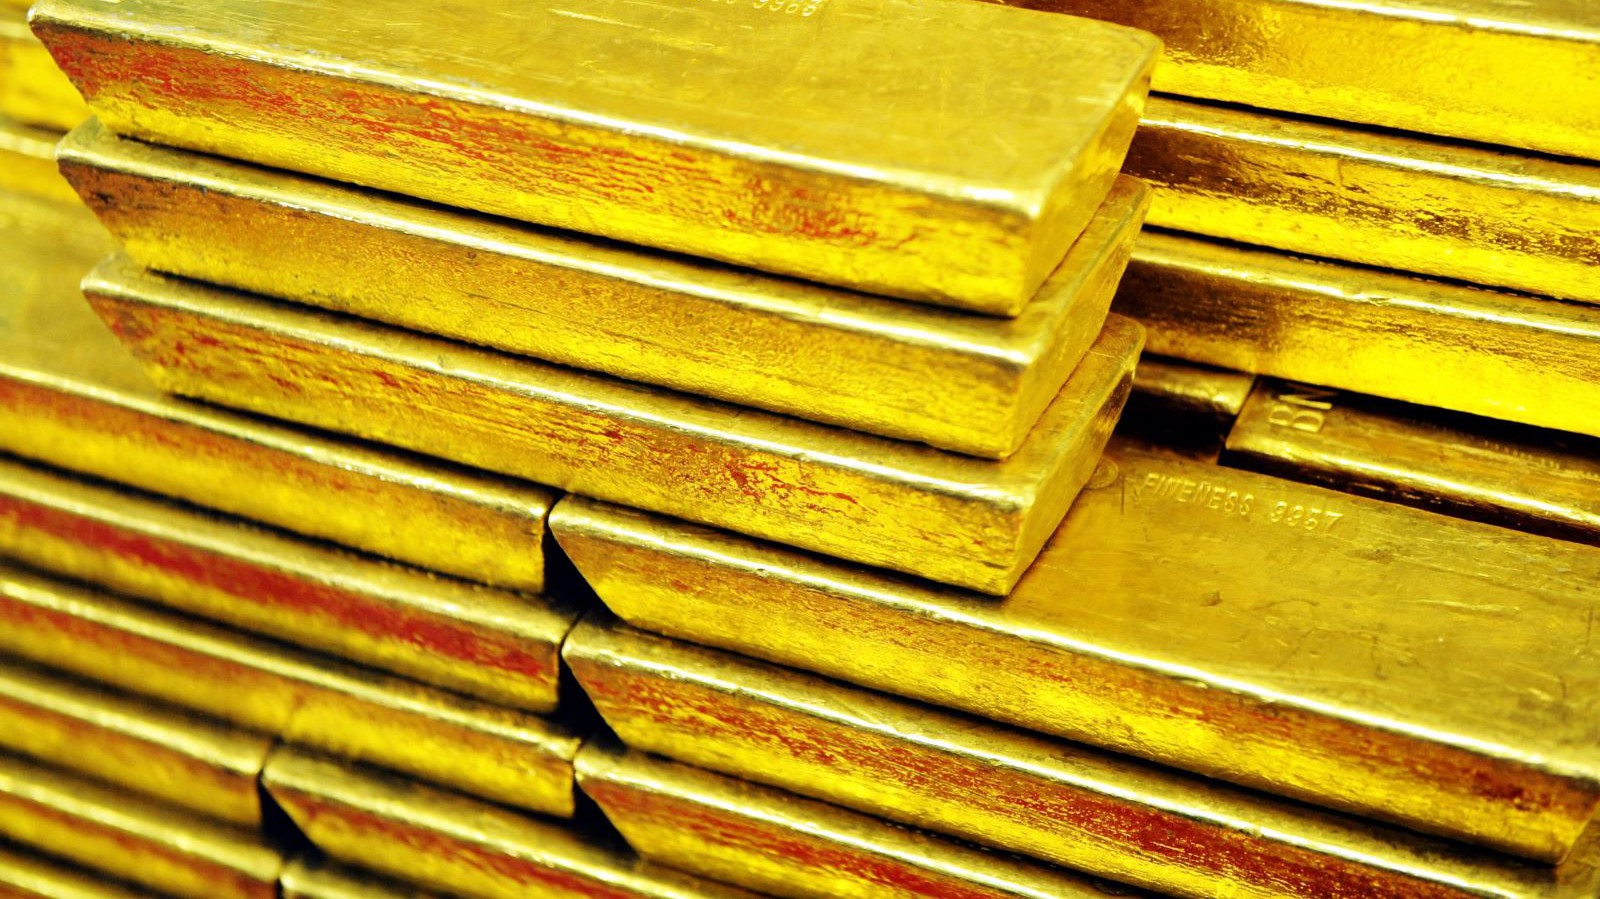 Nước sản xuất vàng hàng đầu thế giới có kế hoạch tăng mạnh công suất